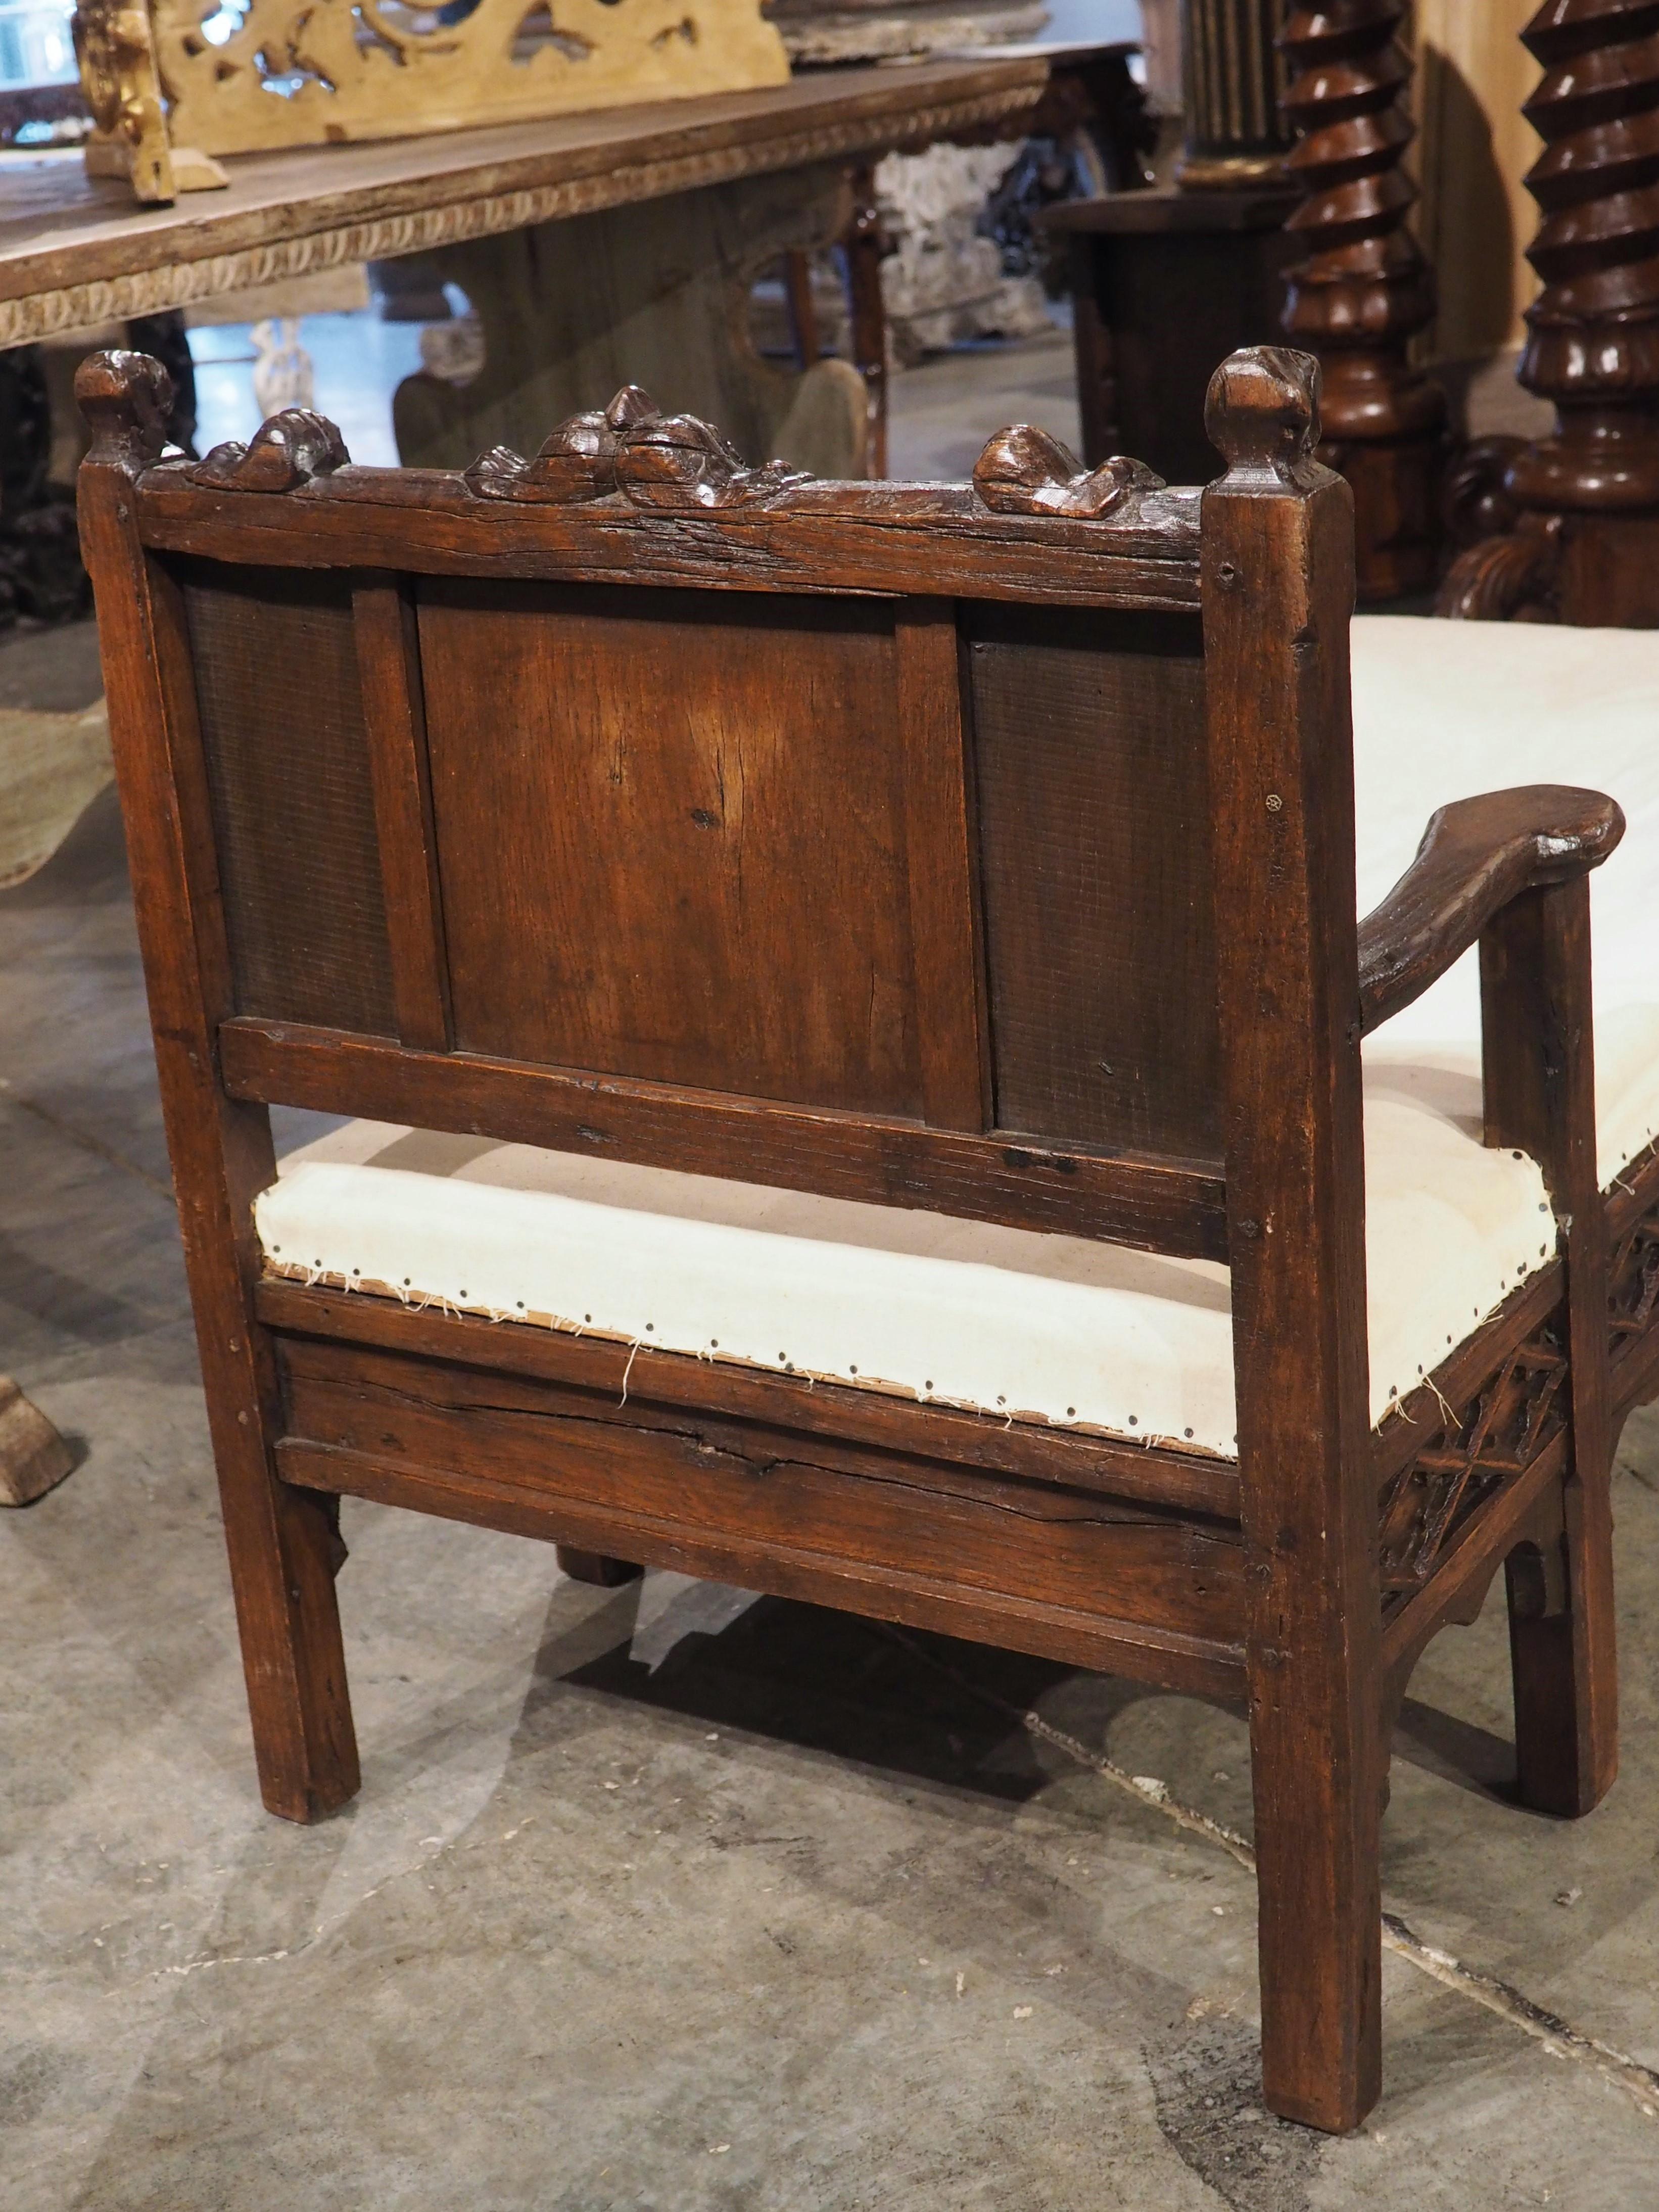 Im 18. und 19. Jahrhundert war es nicht unüblich, dass geschickte Handwerker ältere Holzschnitzereien für ihre eigenen Möbelkreationen umfunktionierten. Ein französischer Menuisier nutzte diese Technik (um 1870), indem er eine zuvor geschnitzte